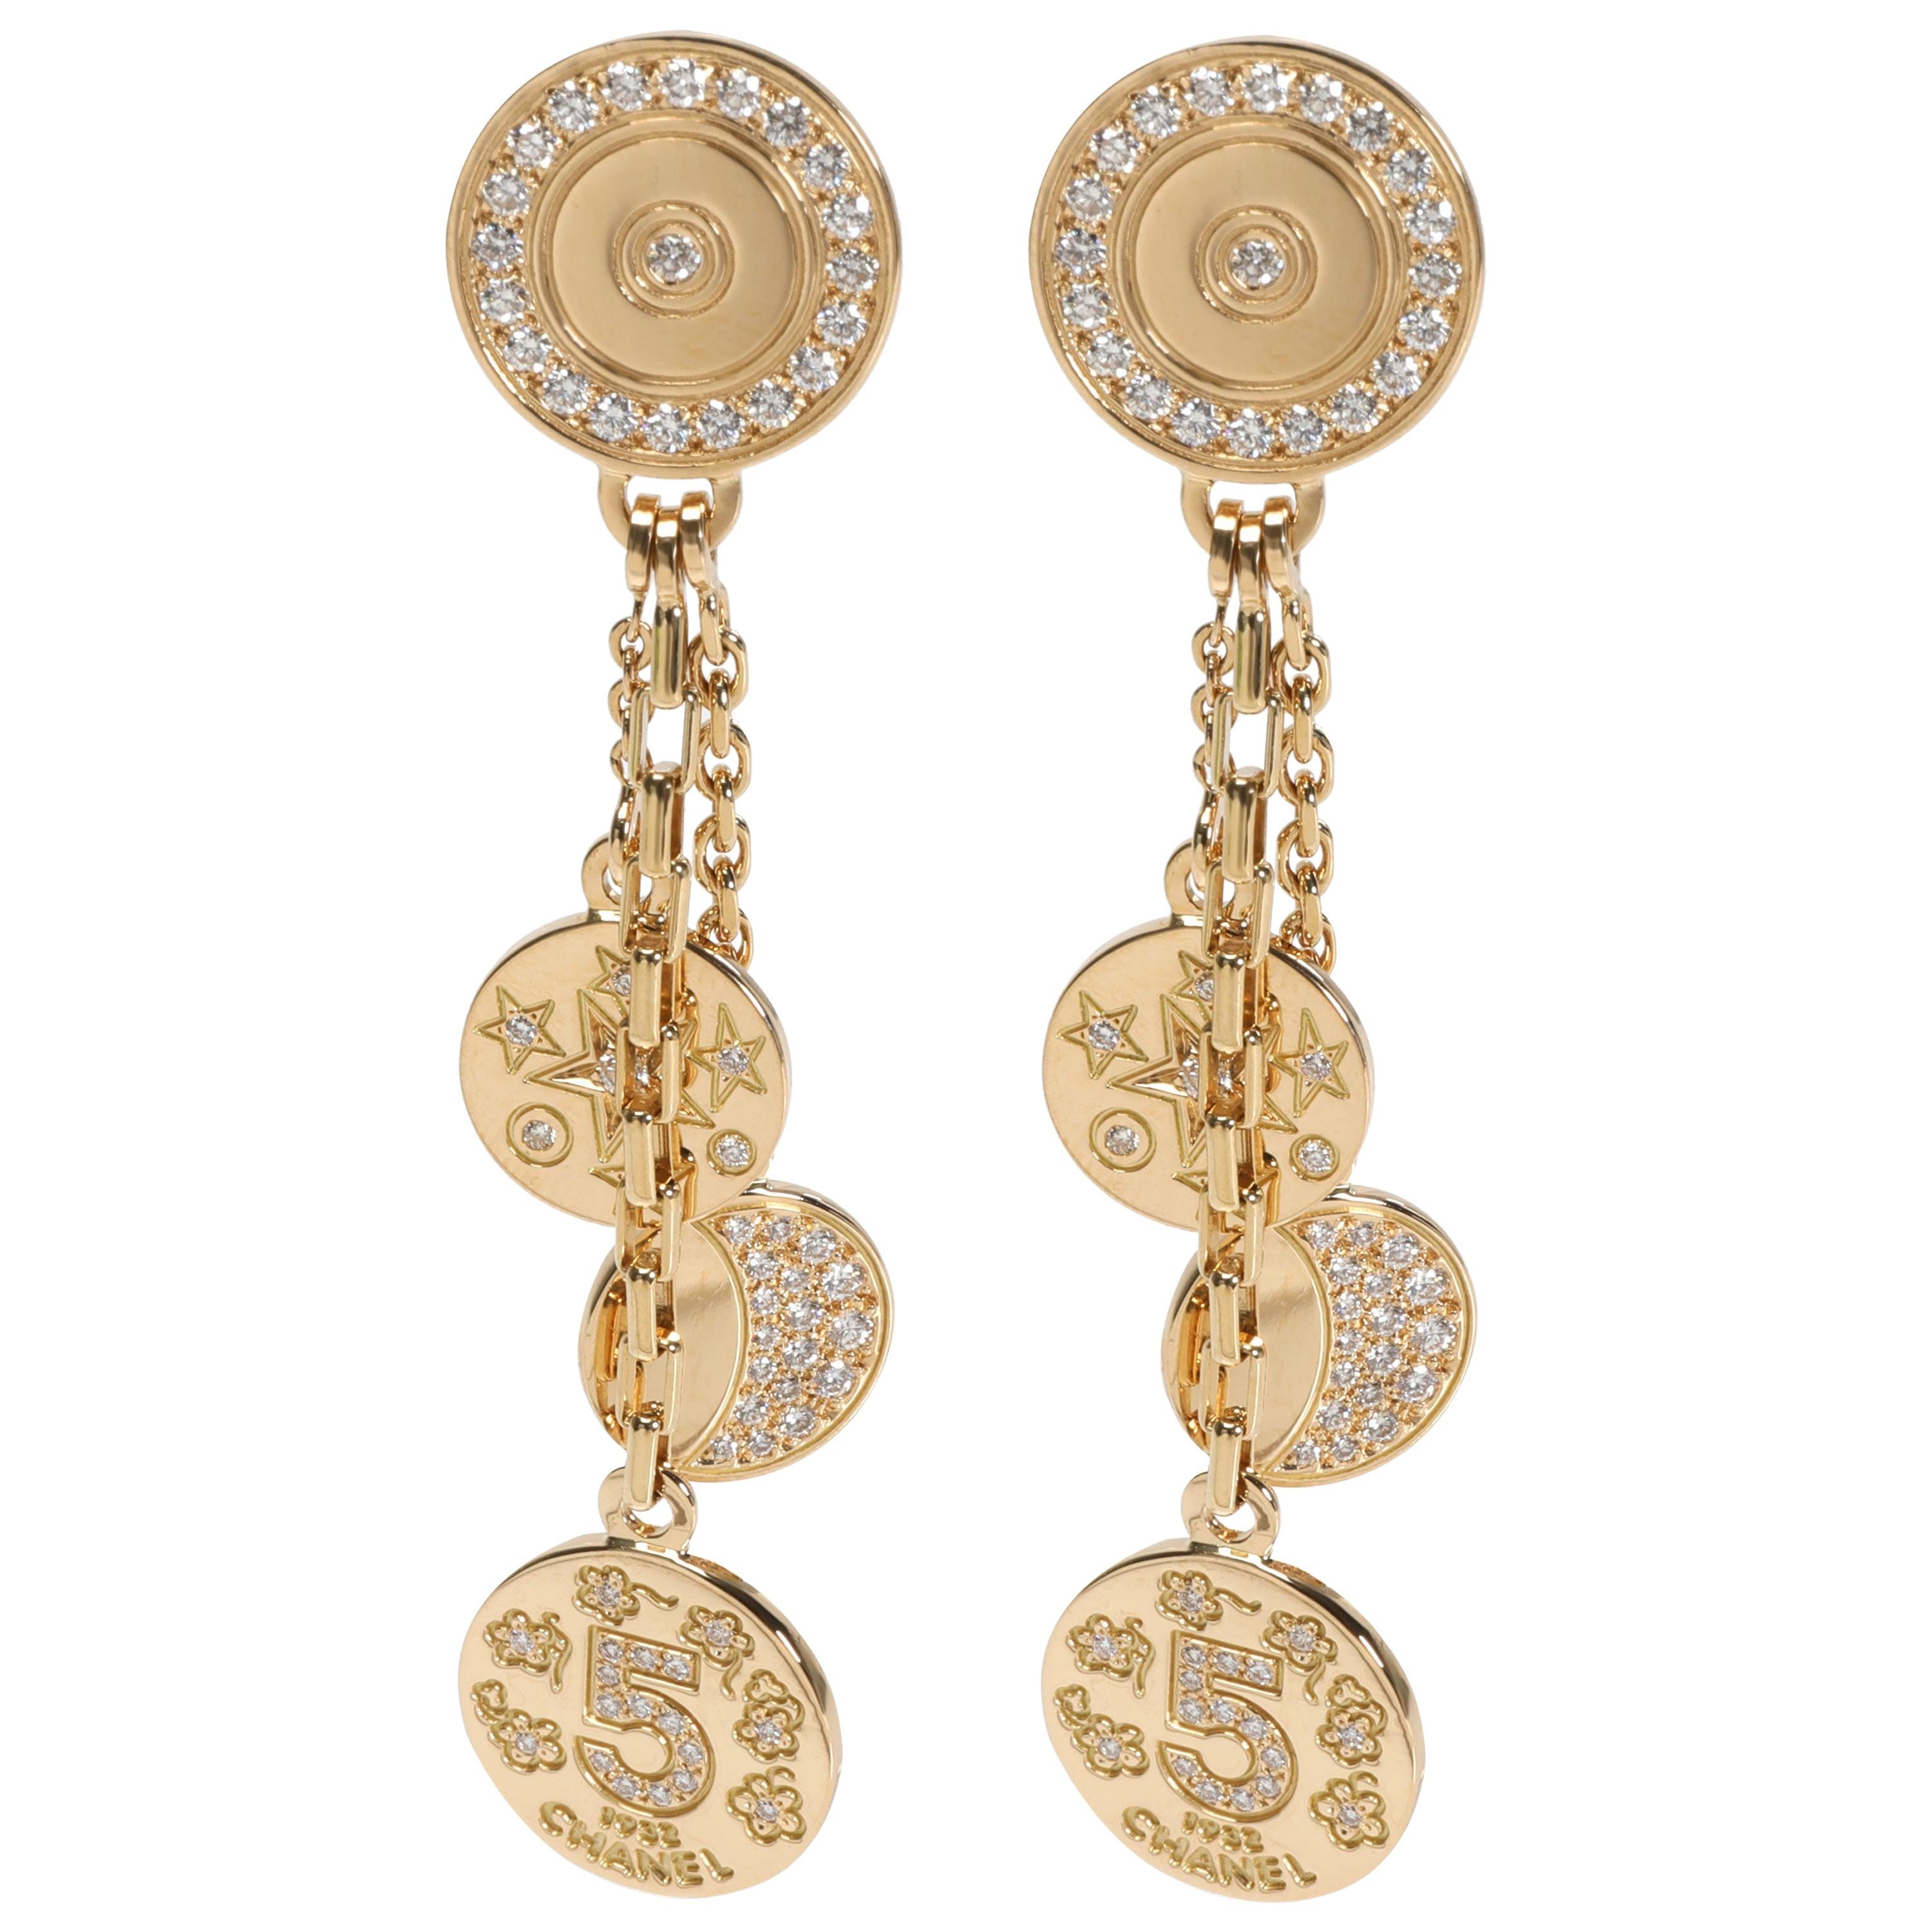 Chanel Comete Diamond Earrings in 18 Karat Yellow Gold 1.00 Carat